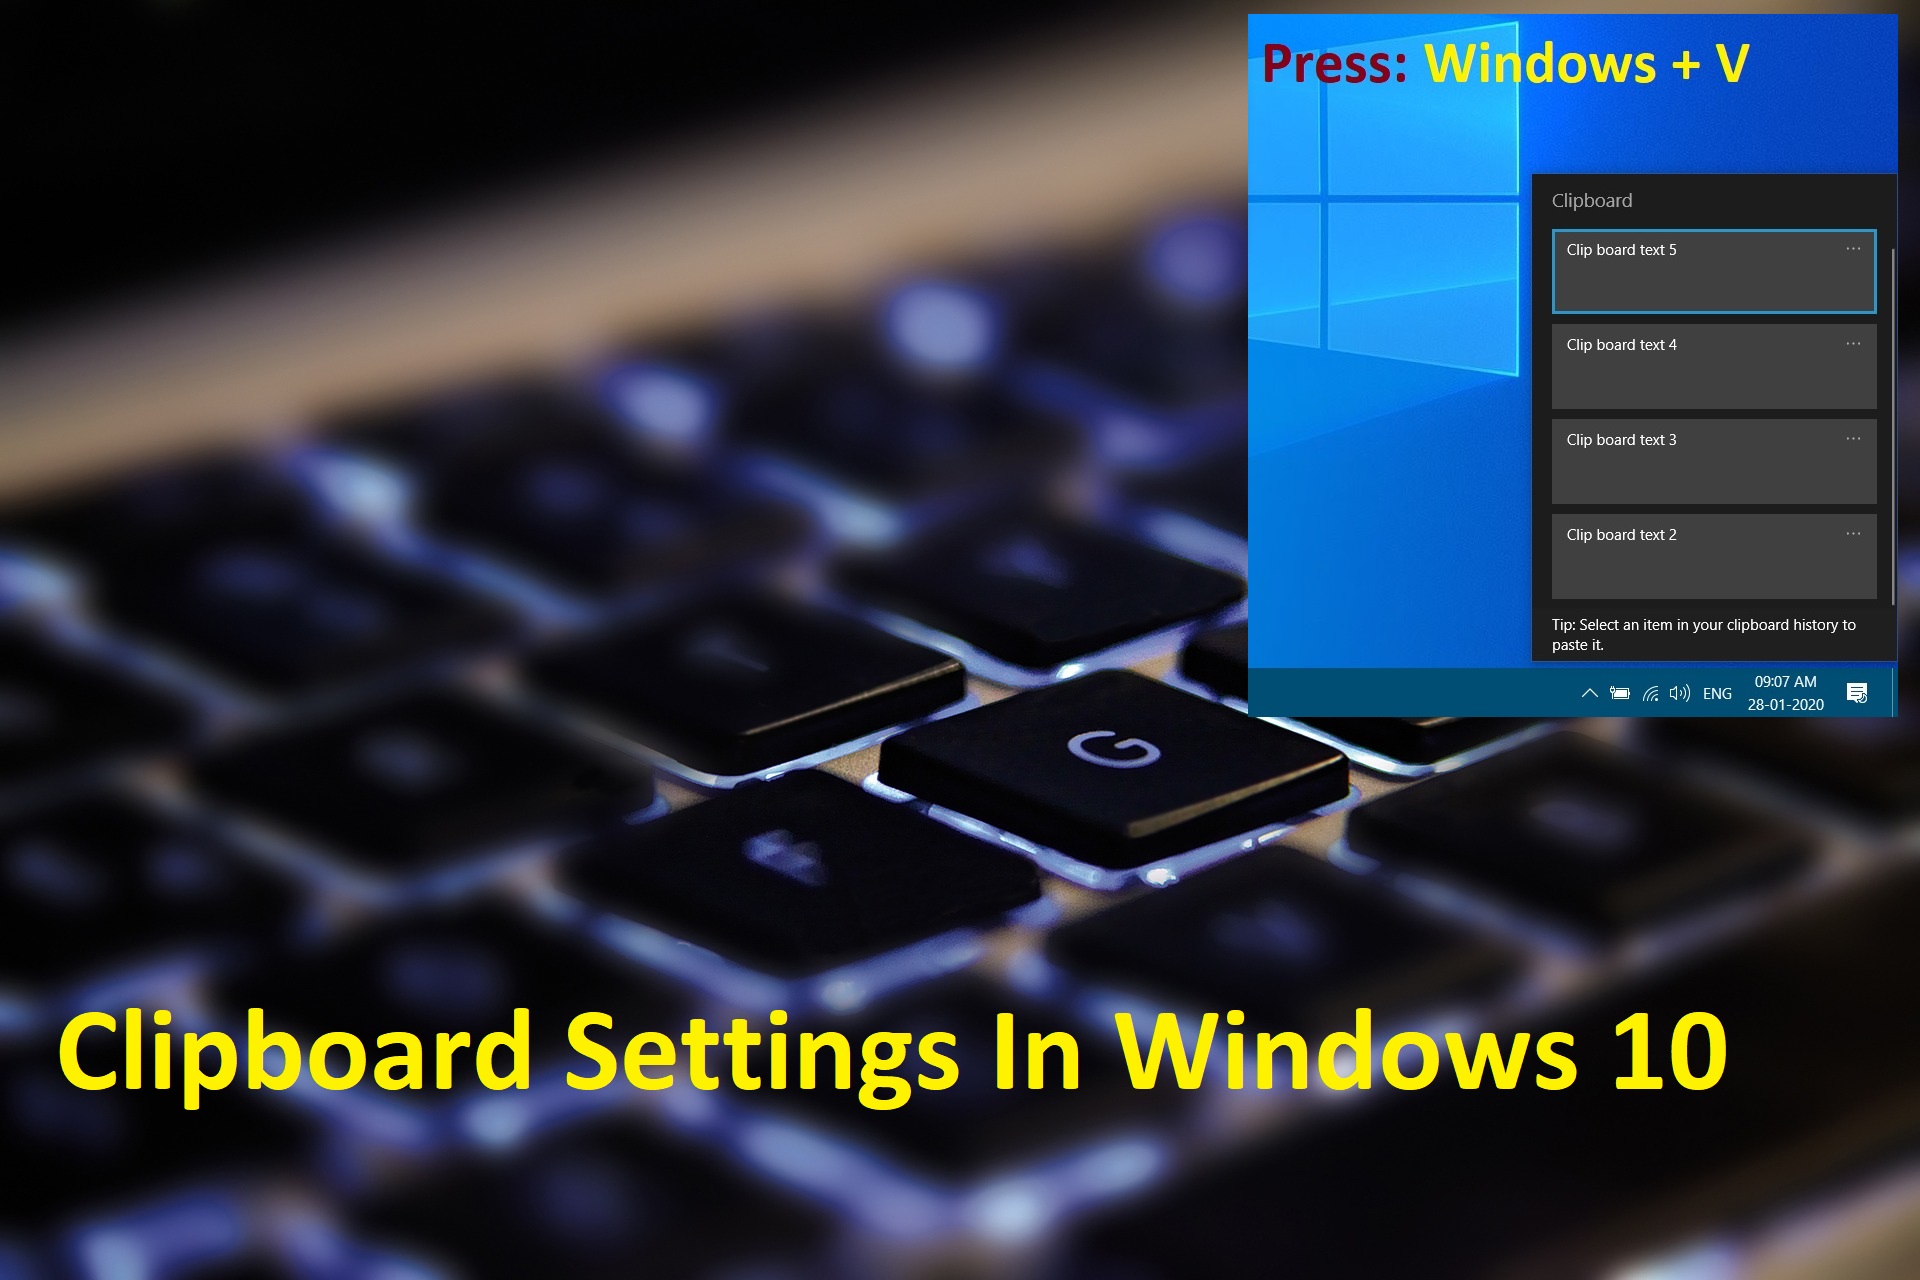 Clipboard Settings In Windows